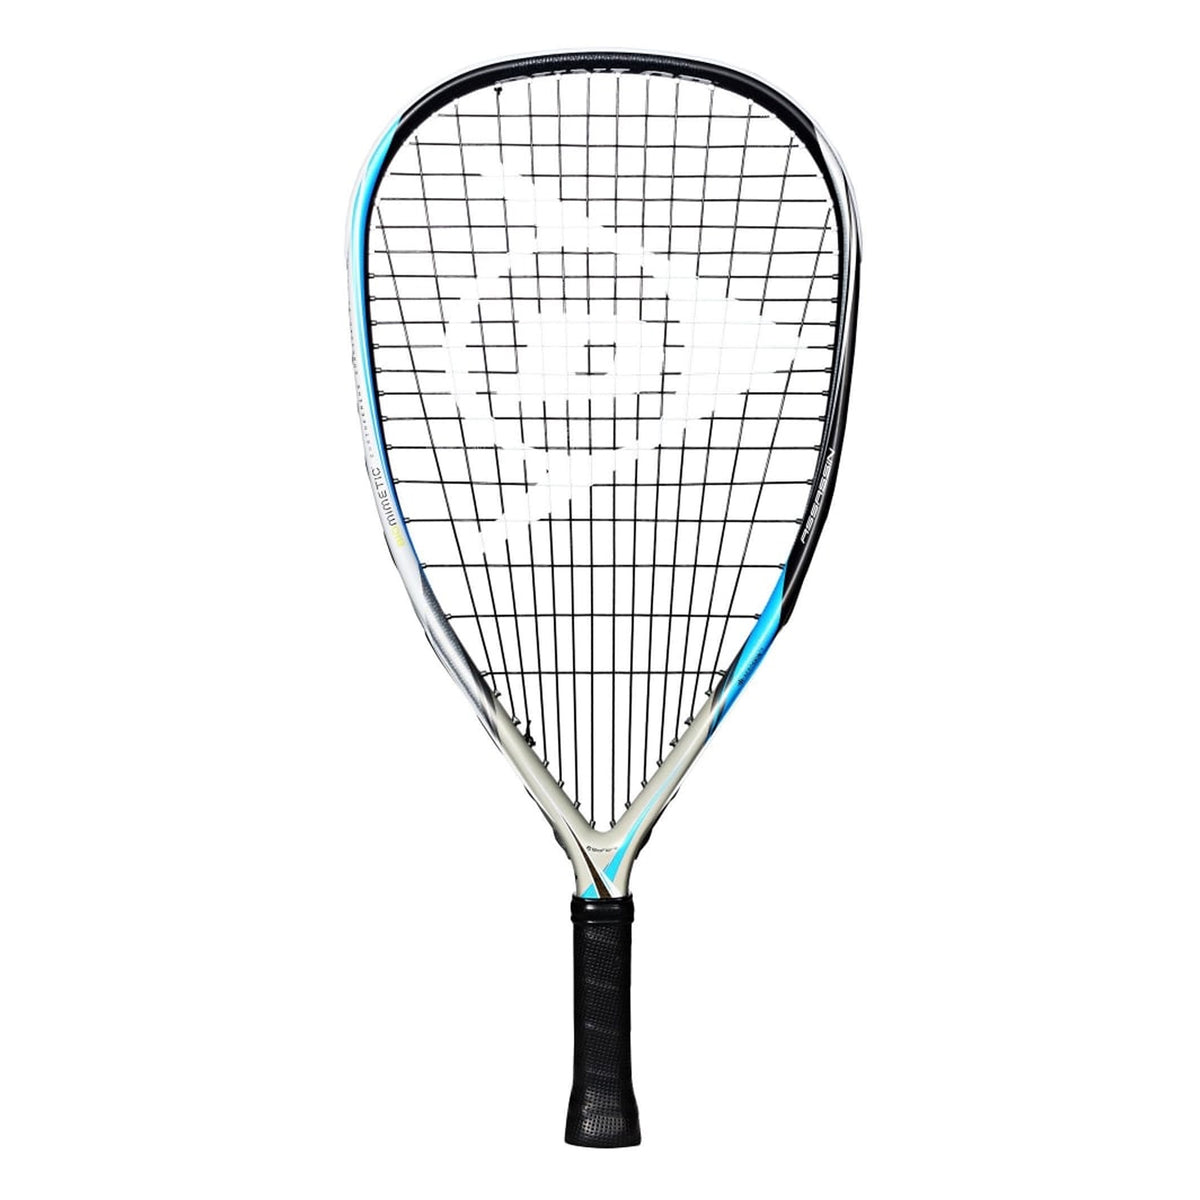 Dunlop Biomimetic Assassin Racketball Racket